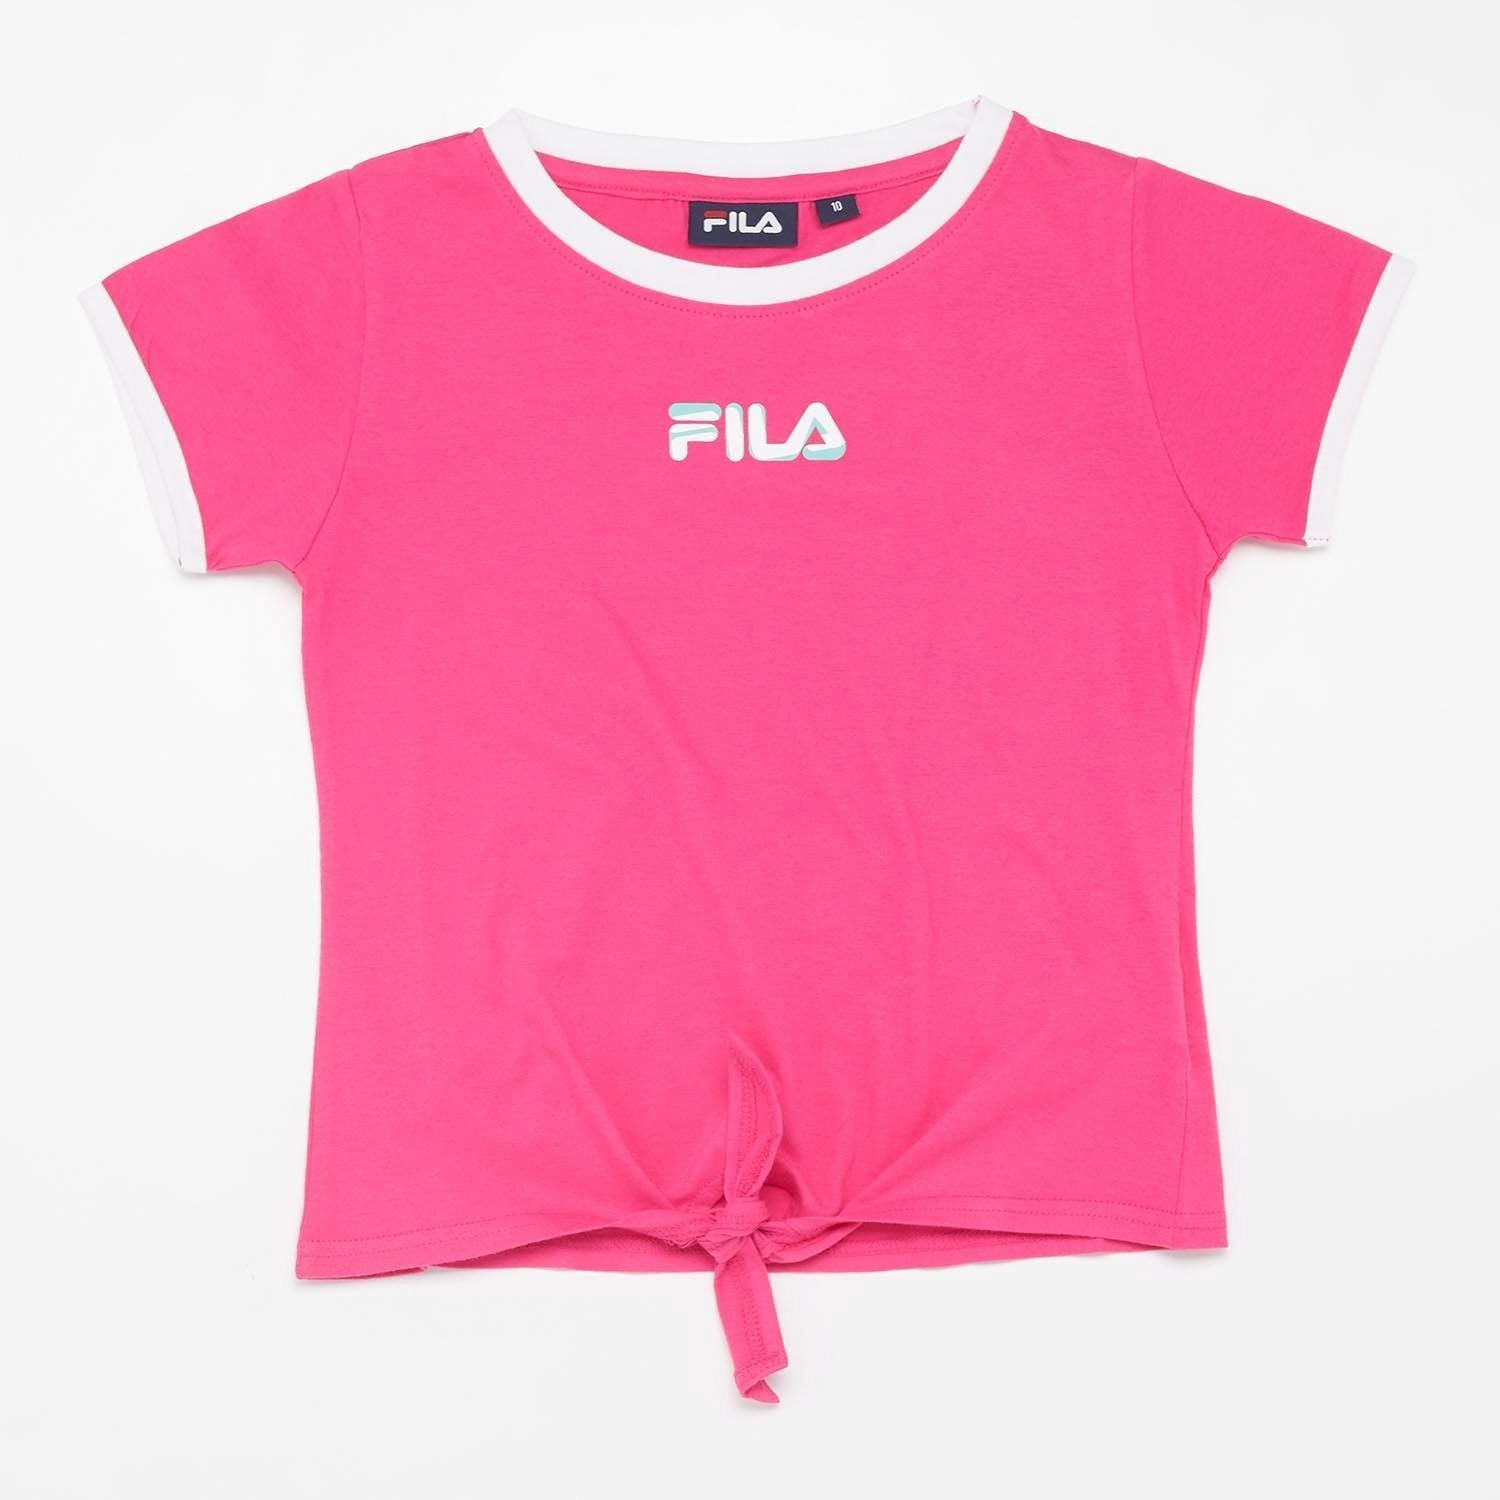 Fila Fila zendaya shirt roze kinderen kinderen